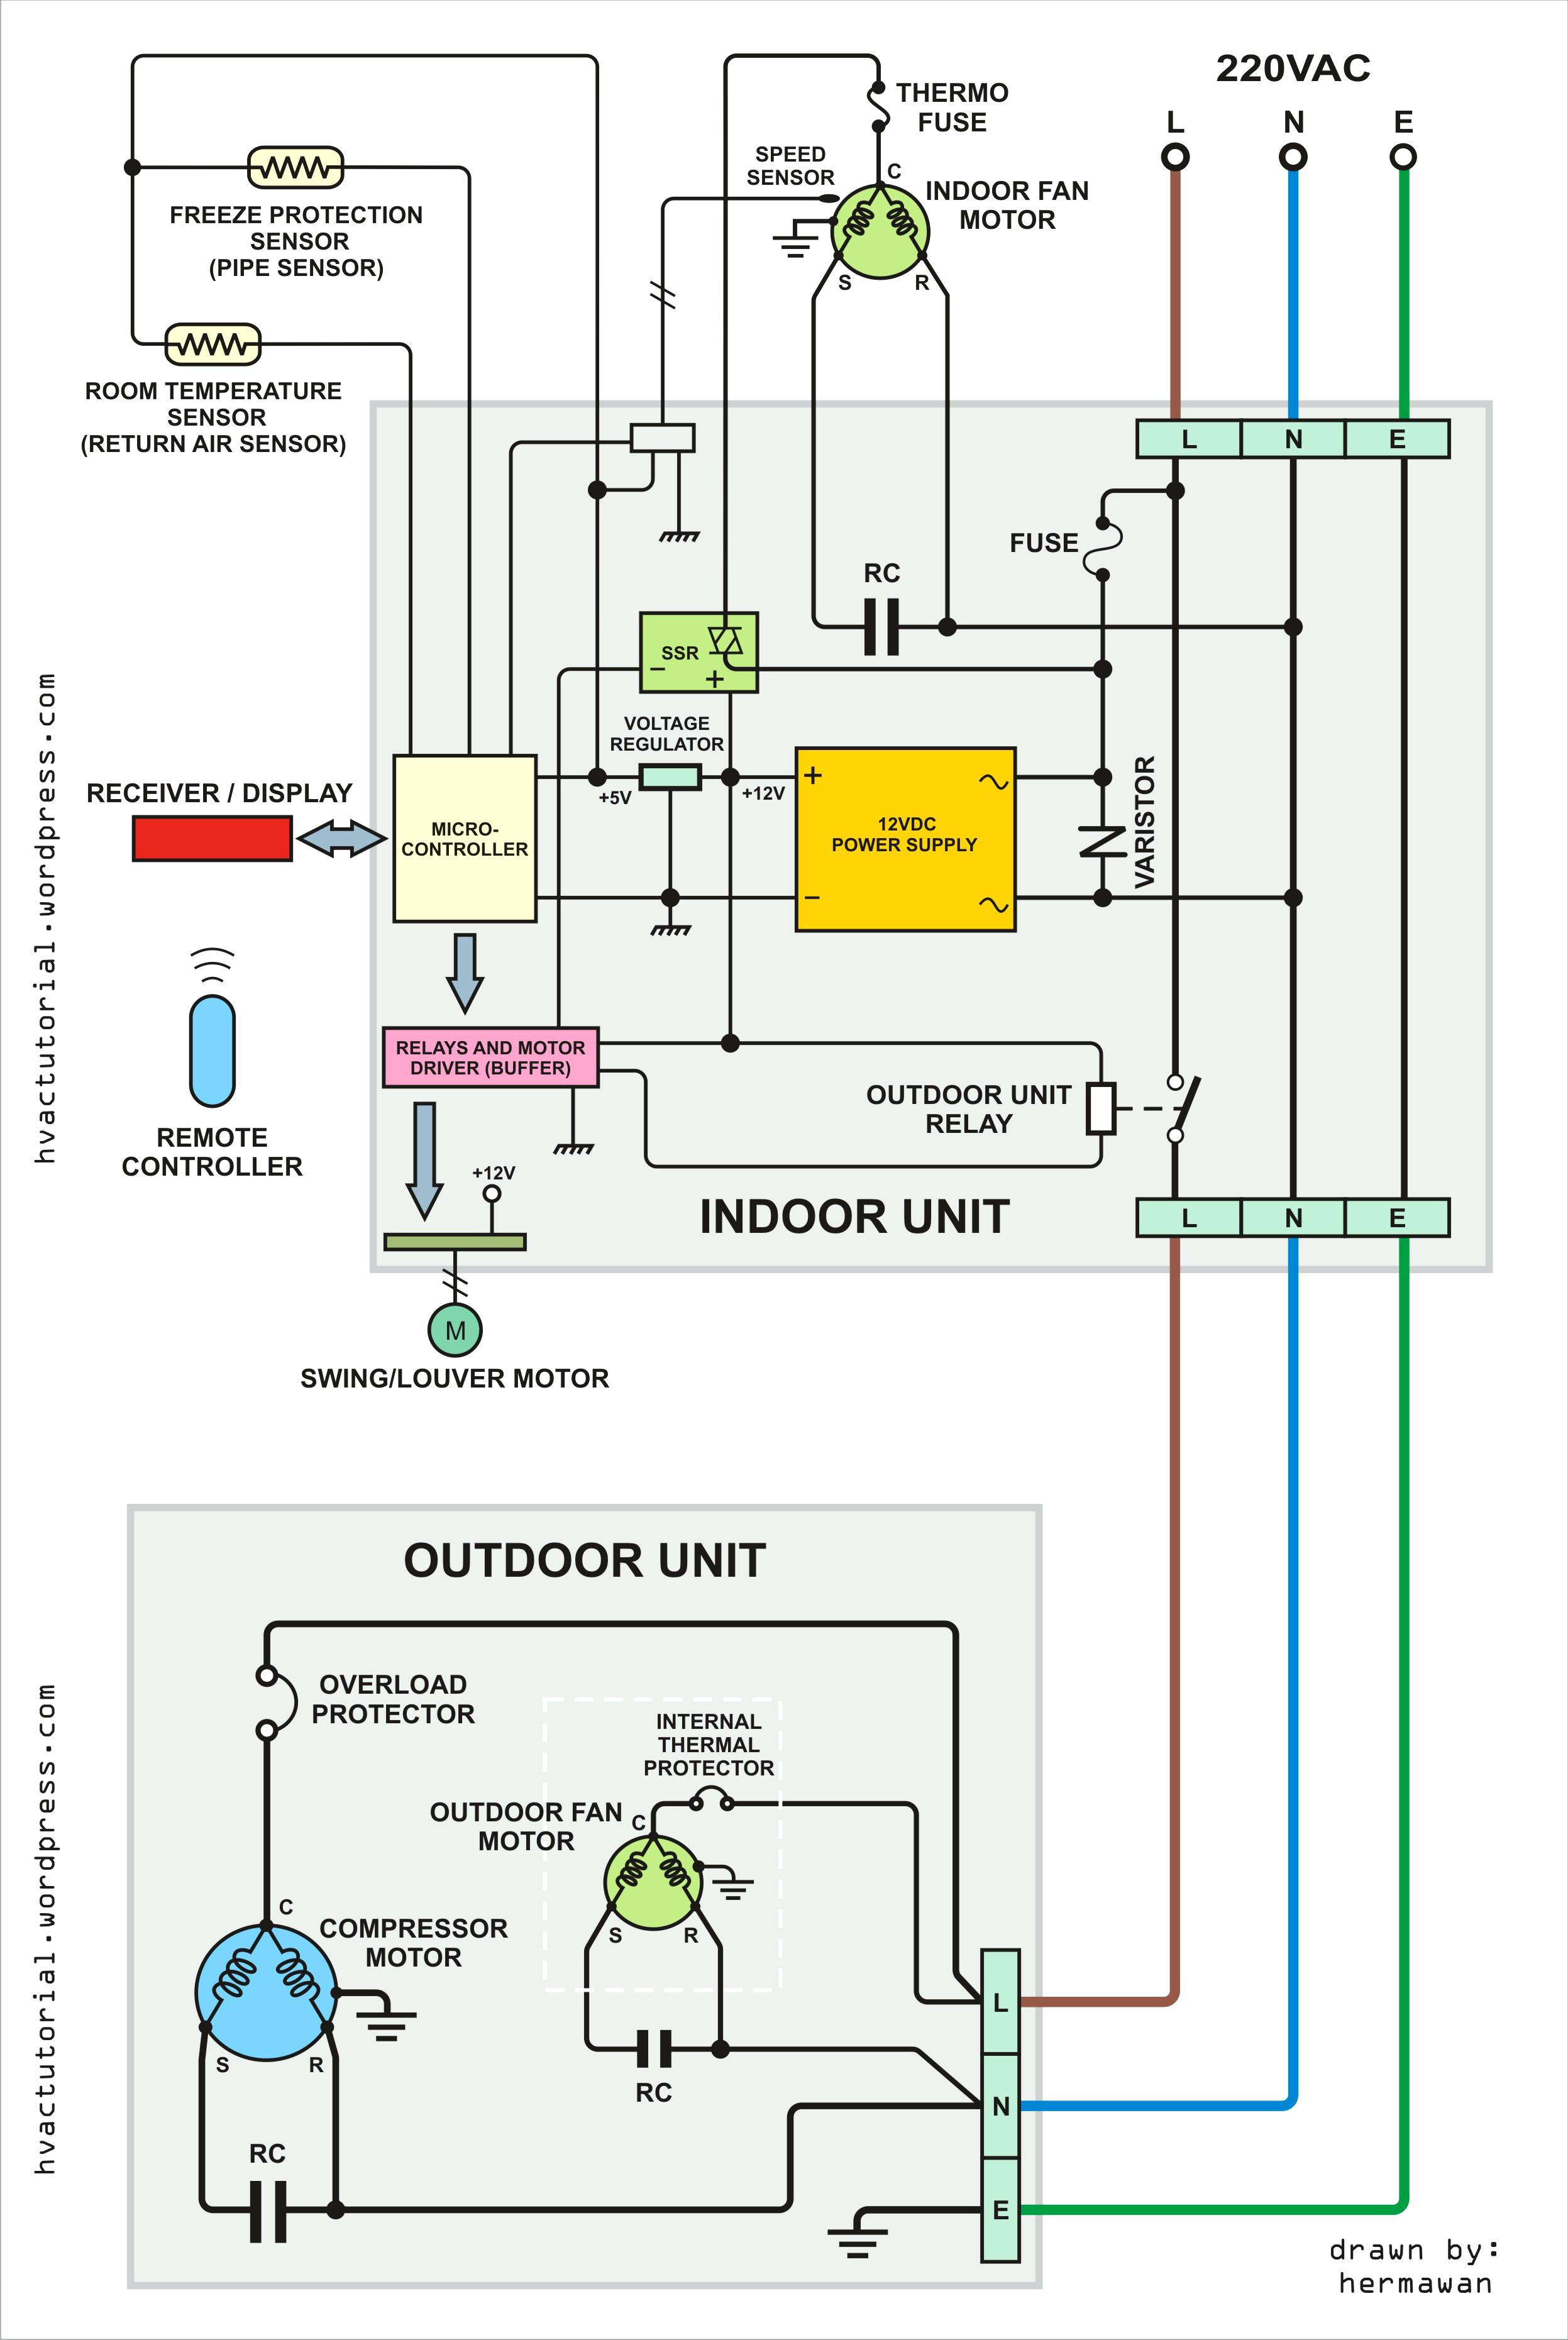 Heat Pump Fan Wiring - Schema Wiring Diagram - Heatpump Wiring Diagram